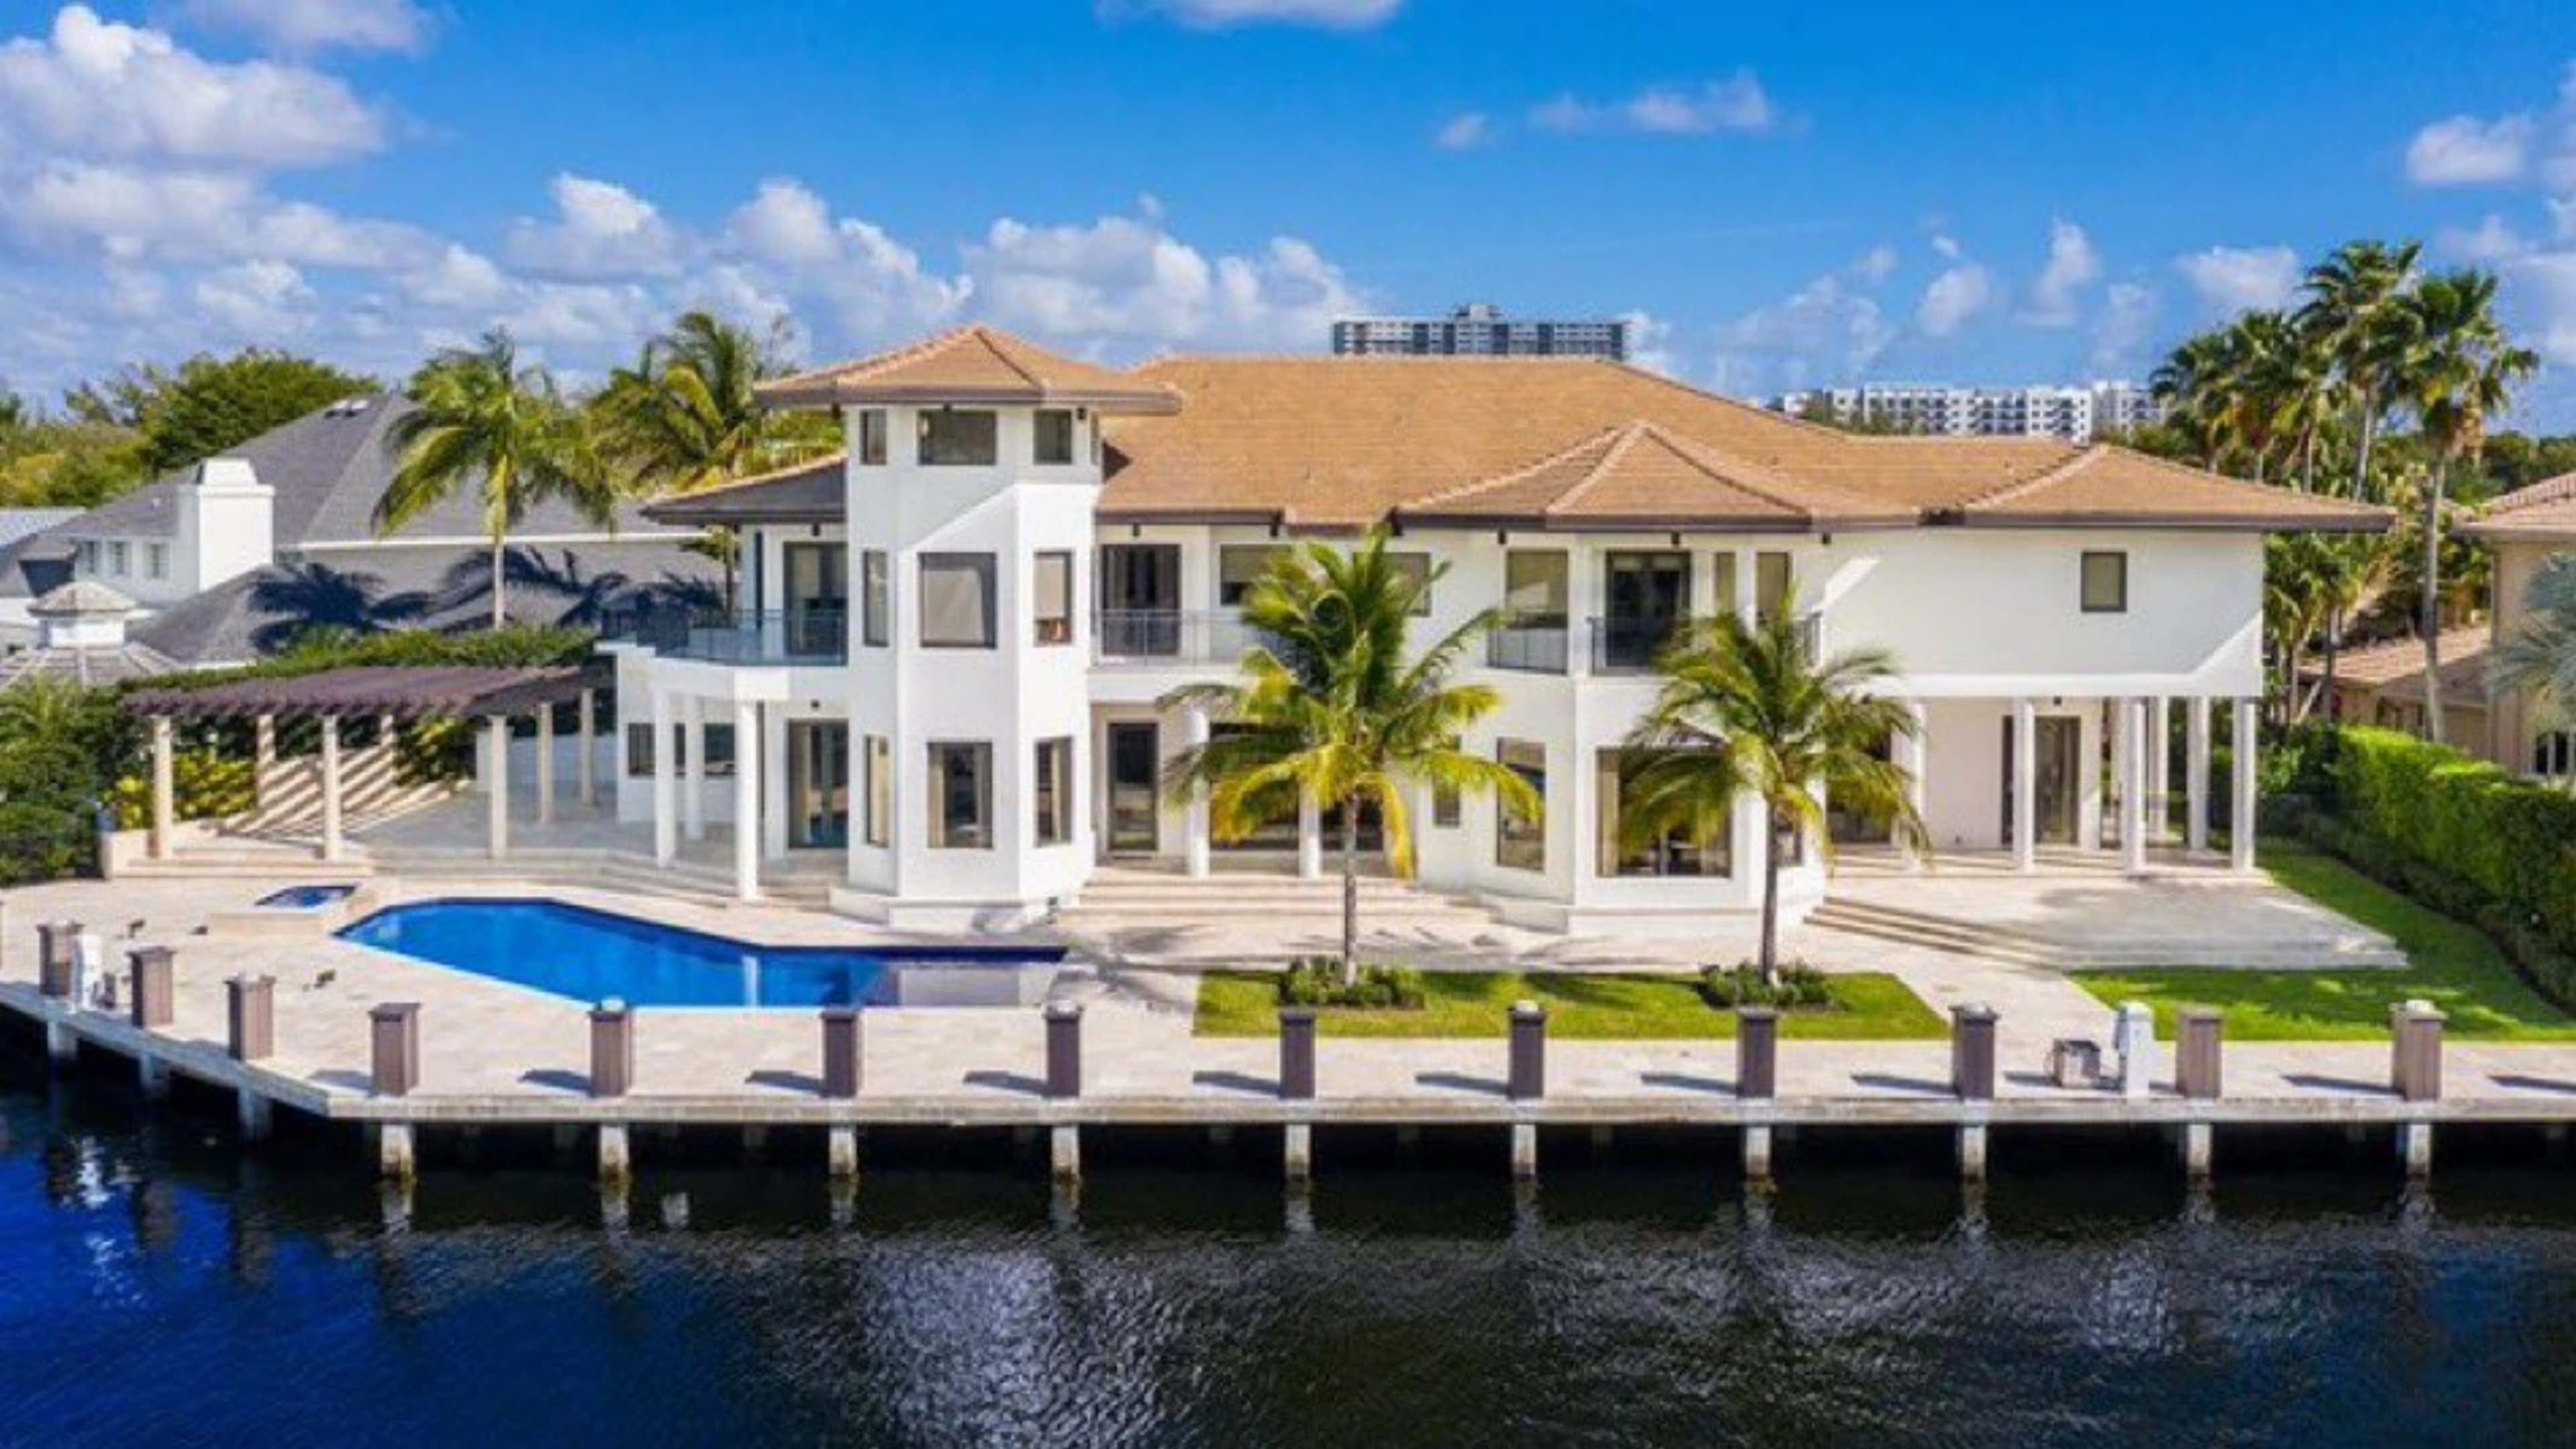 Lionel Messi mansion Miami